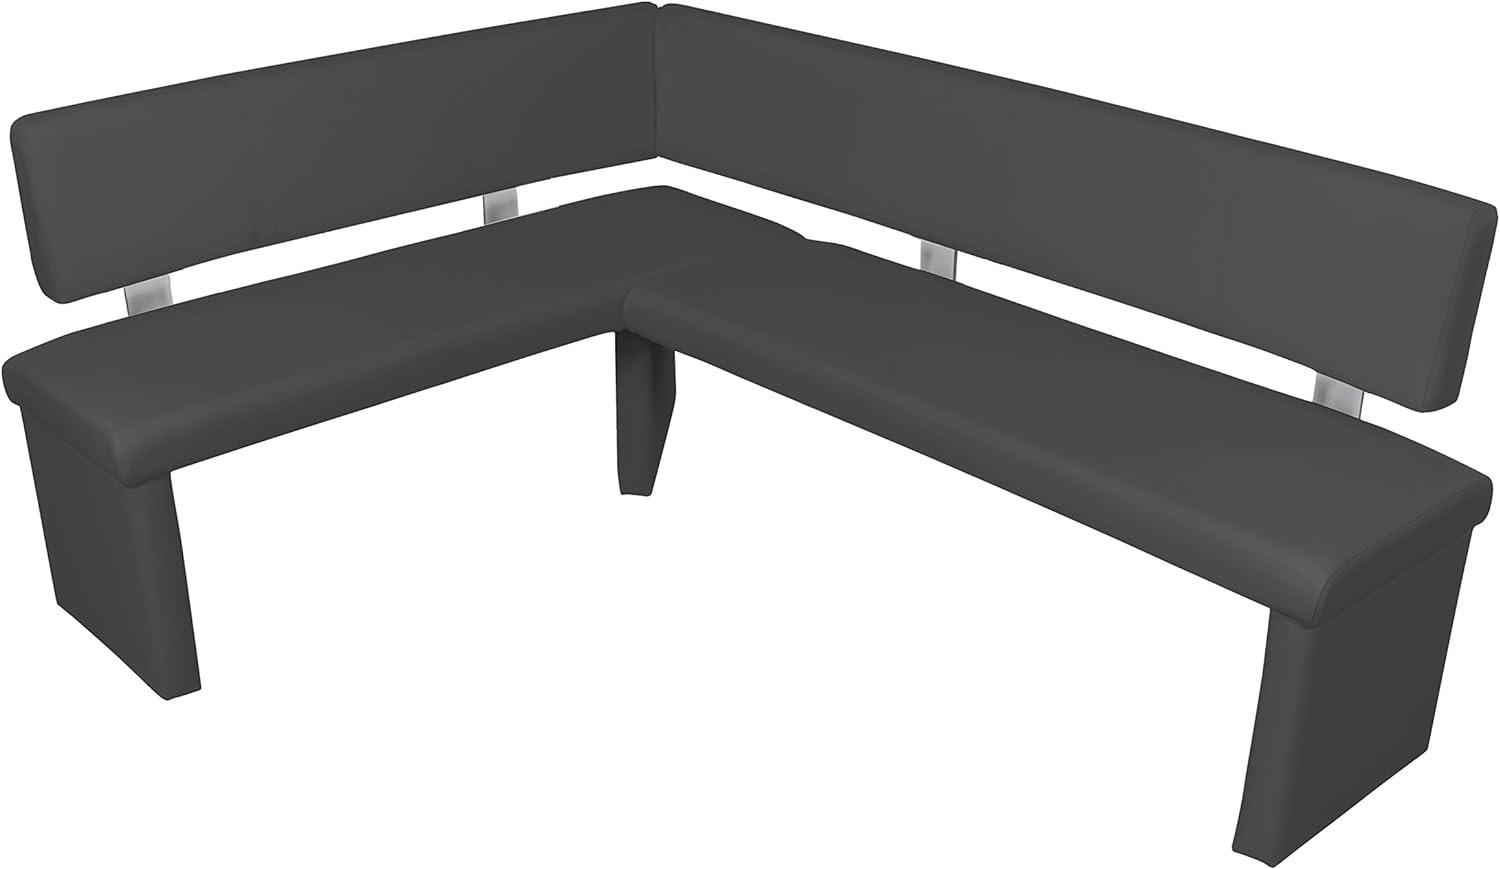 byLIVING Cardy Moderne Eckbank, Langer Schenkel rechts, Kunstleder, schwarz, 149 x 194, H 83 cm Bild 1